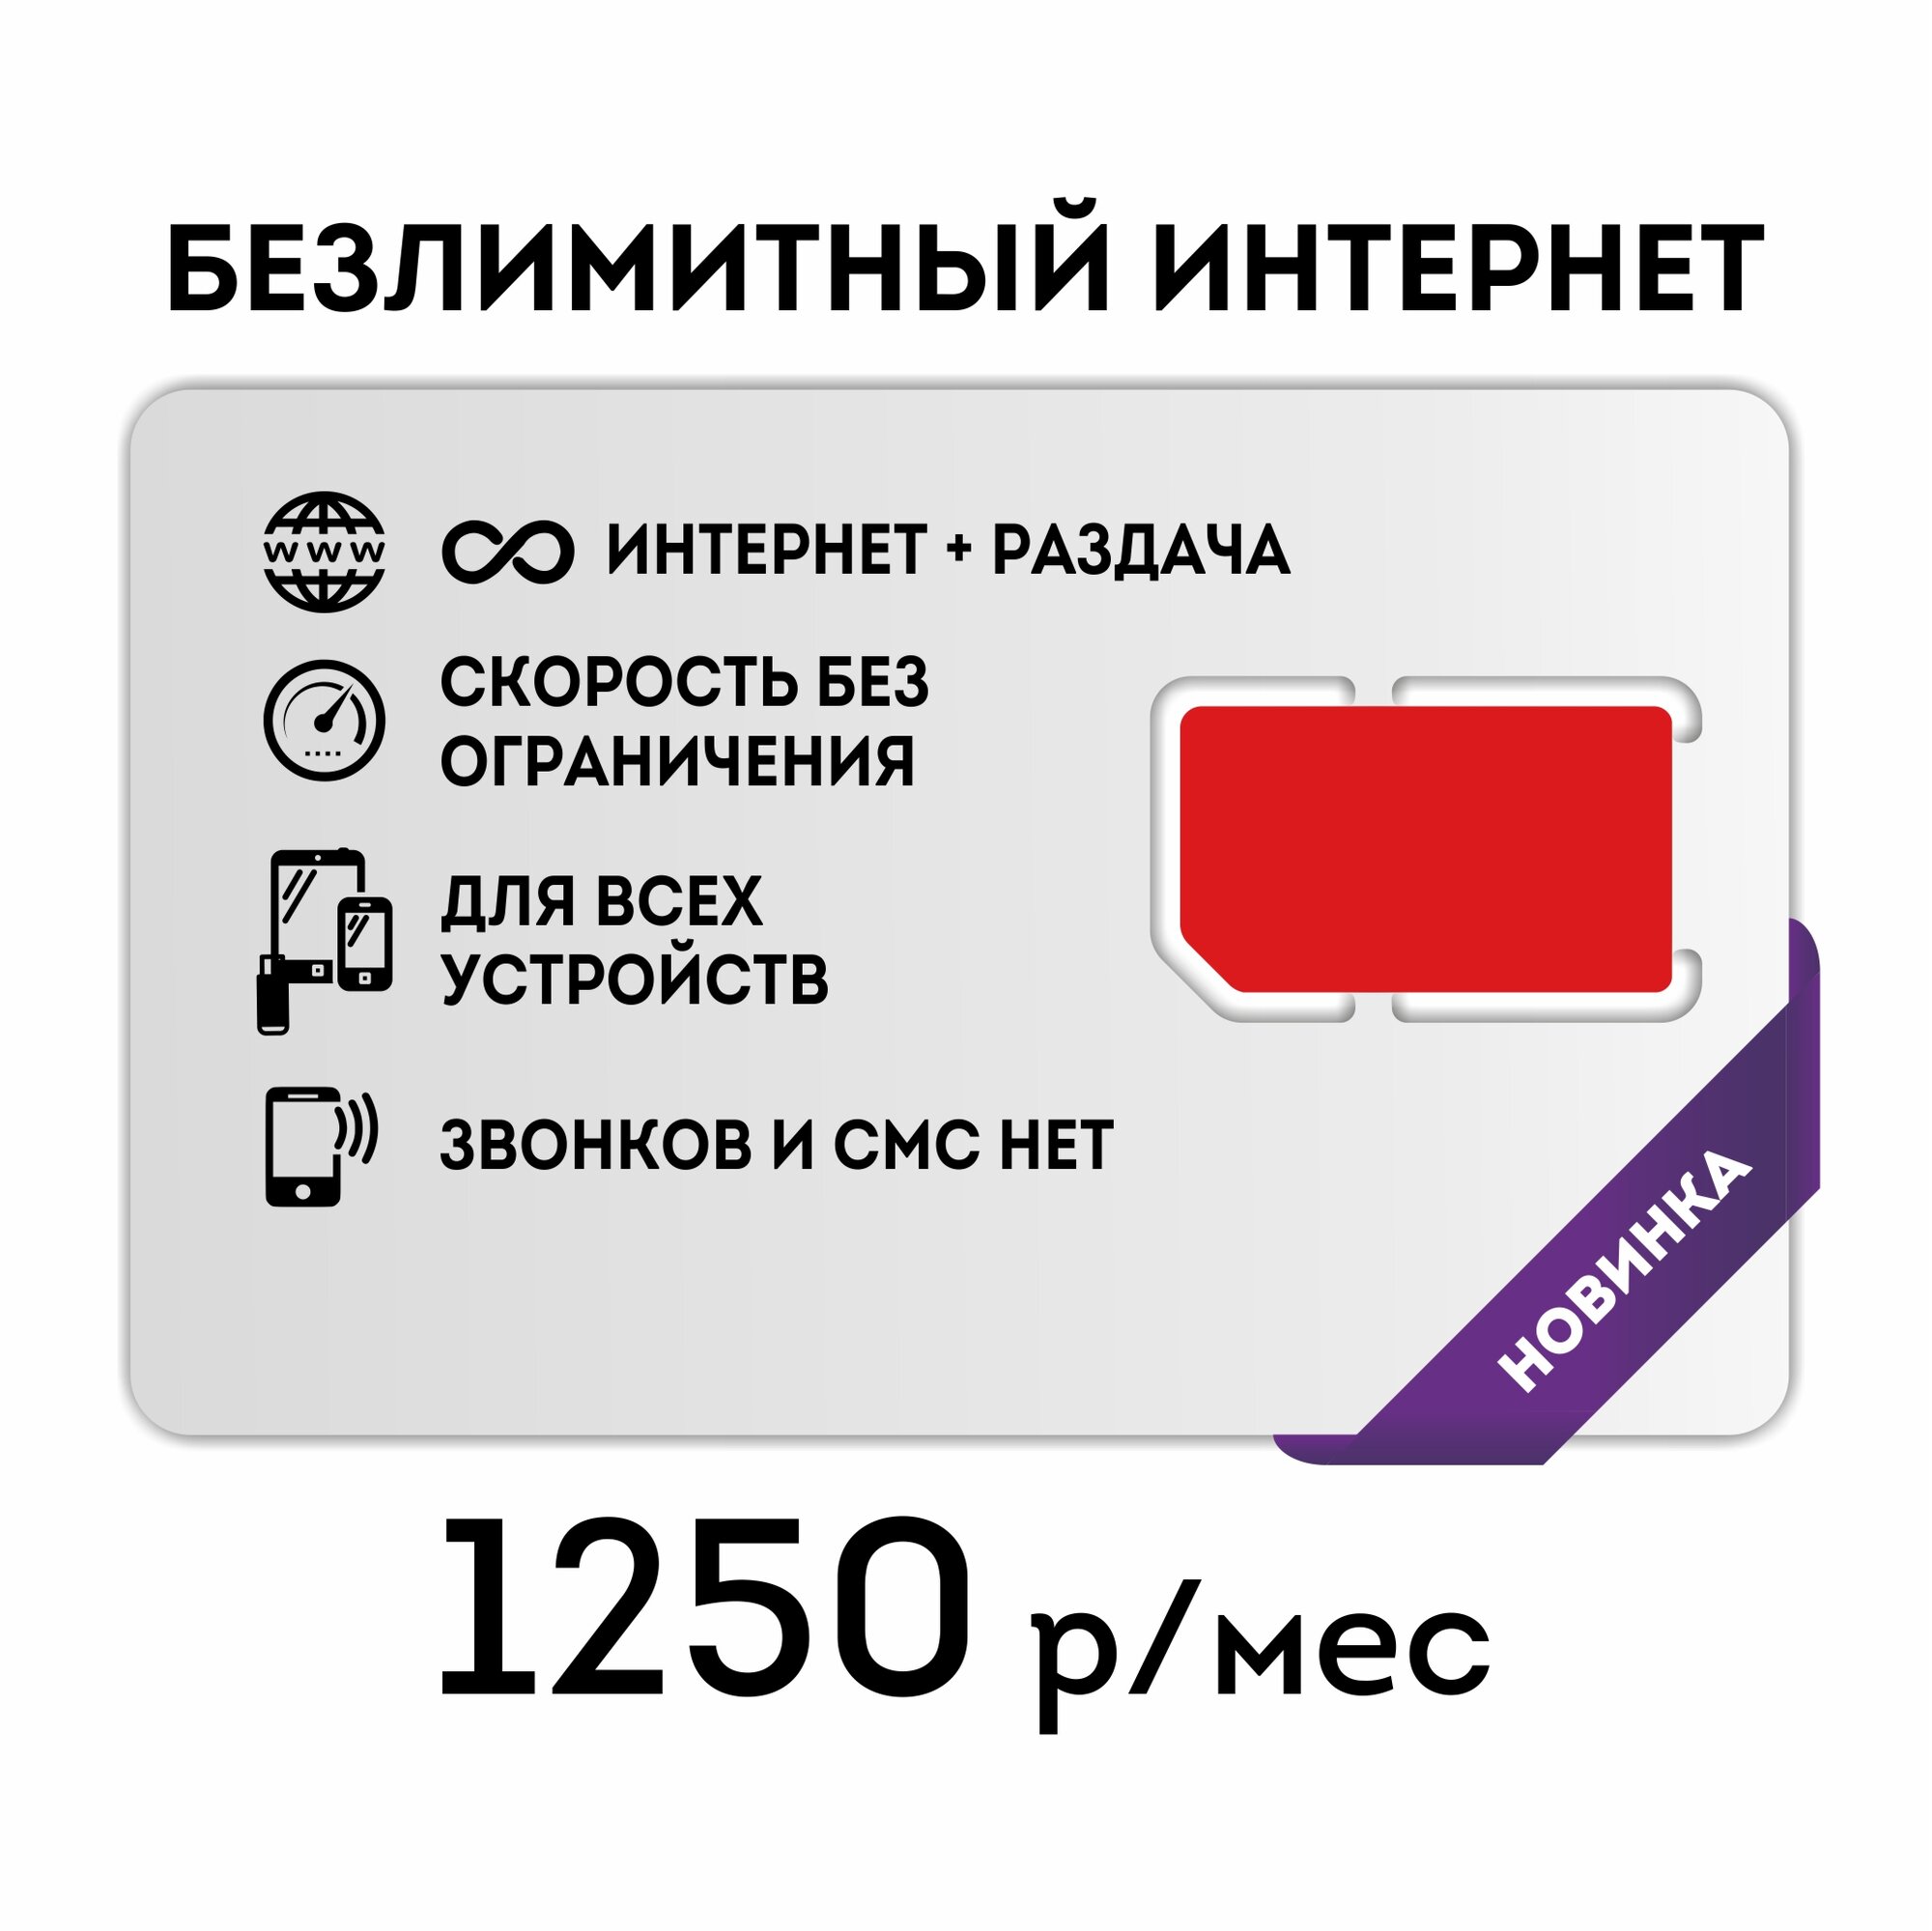 Сим-карта SIM-карта Безлимитный интернет во всех сетях, бесплатная раздача (Вся Россия)для всех устройств